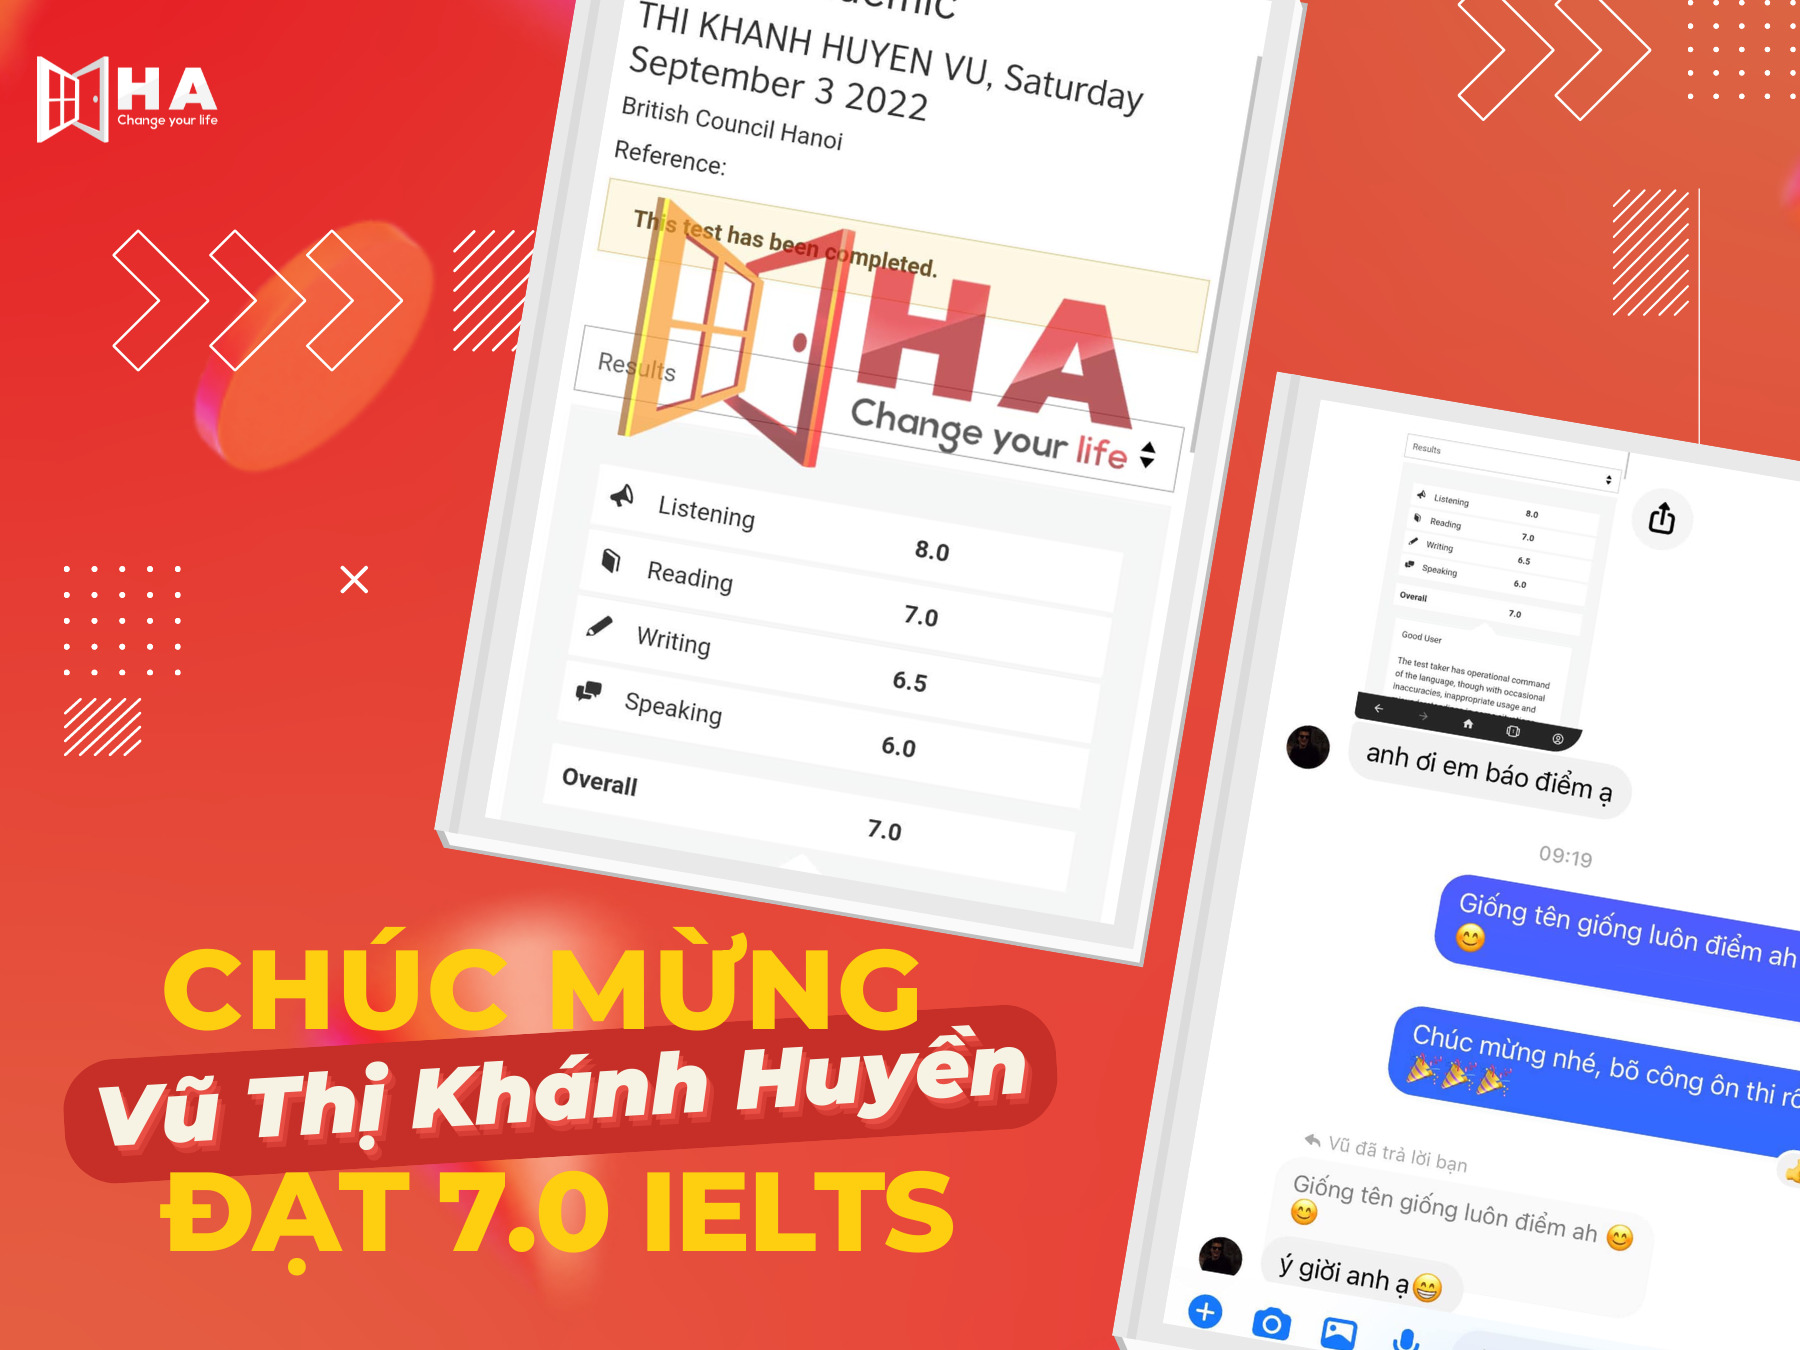 Chúc mừng thành tích học viên Vũ Thị Khánh Huyền đạt 8.0 Listening